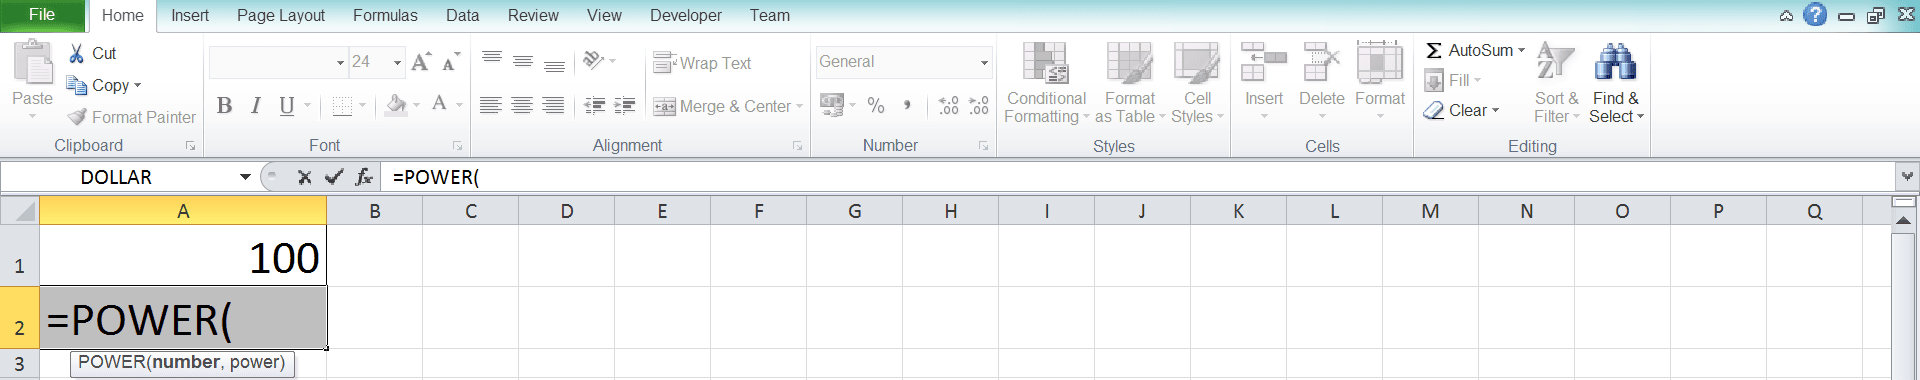 Cara Menghitung Akar di Excel Beserta Berbagai Rumus dan Fungsinya - Screenshot Langkah 2-2